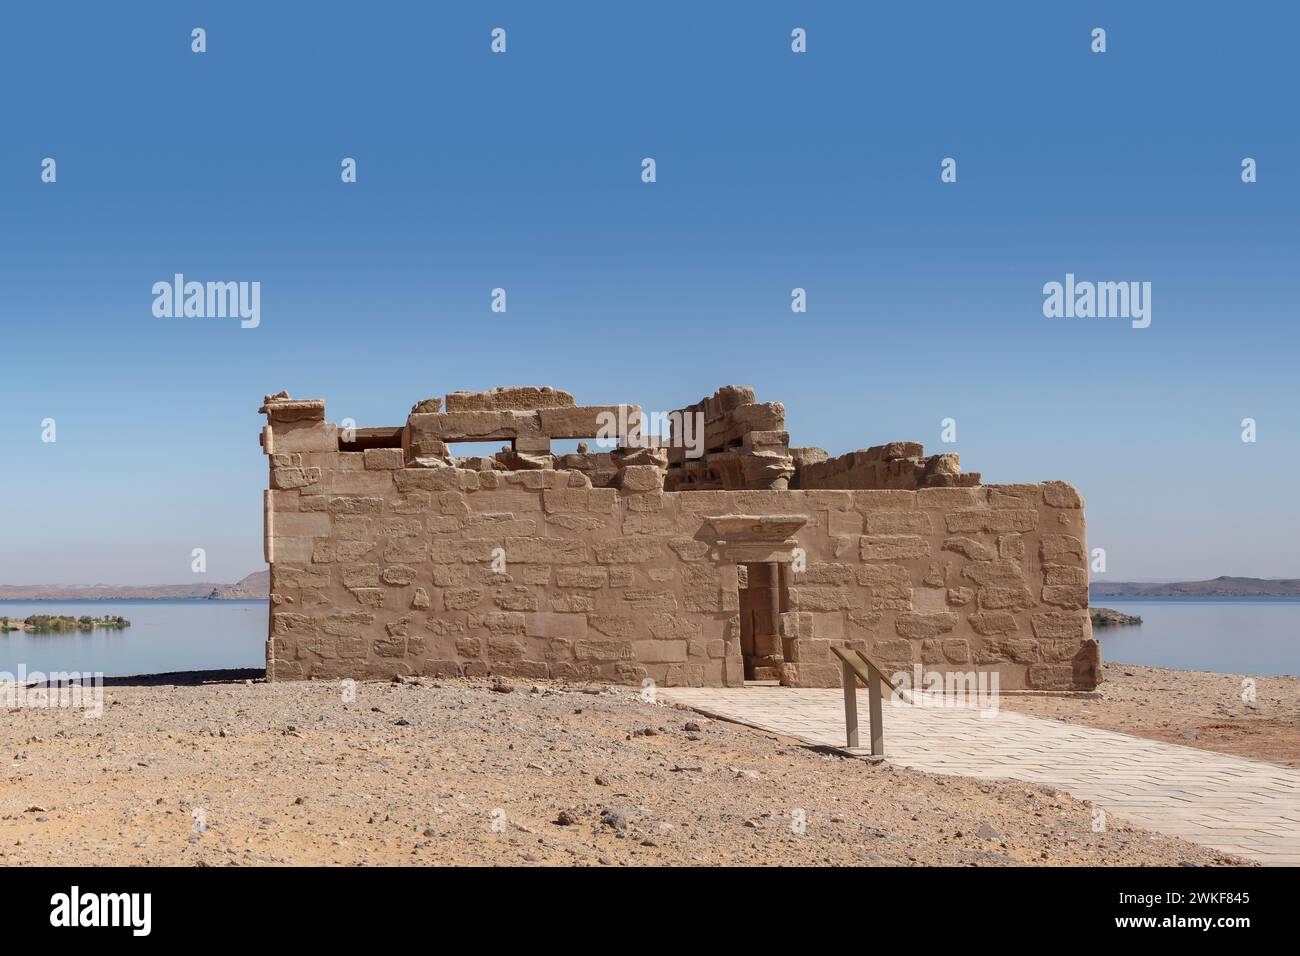 Il tempio di Maharraqa sul lago Nasser, Egitto Foto Stock